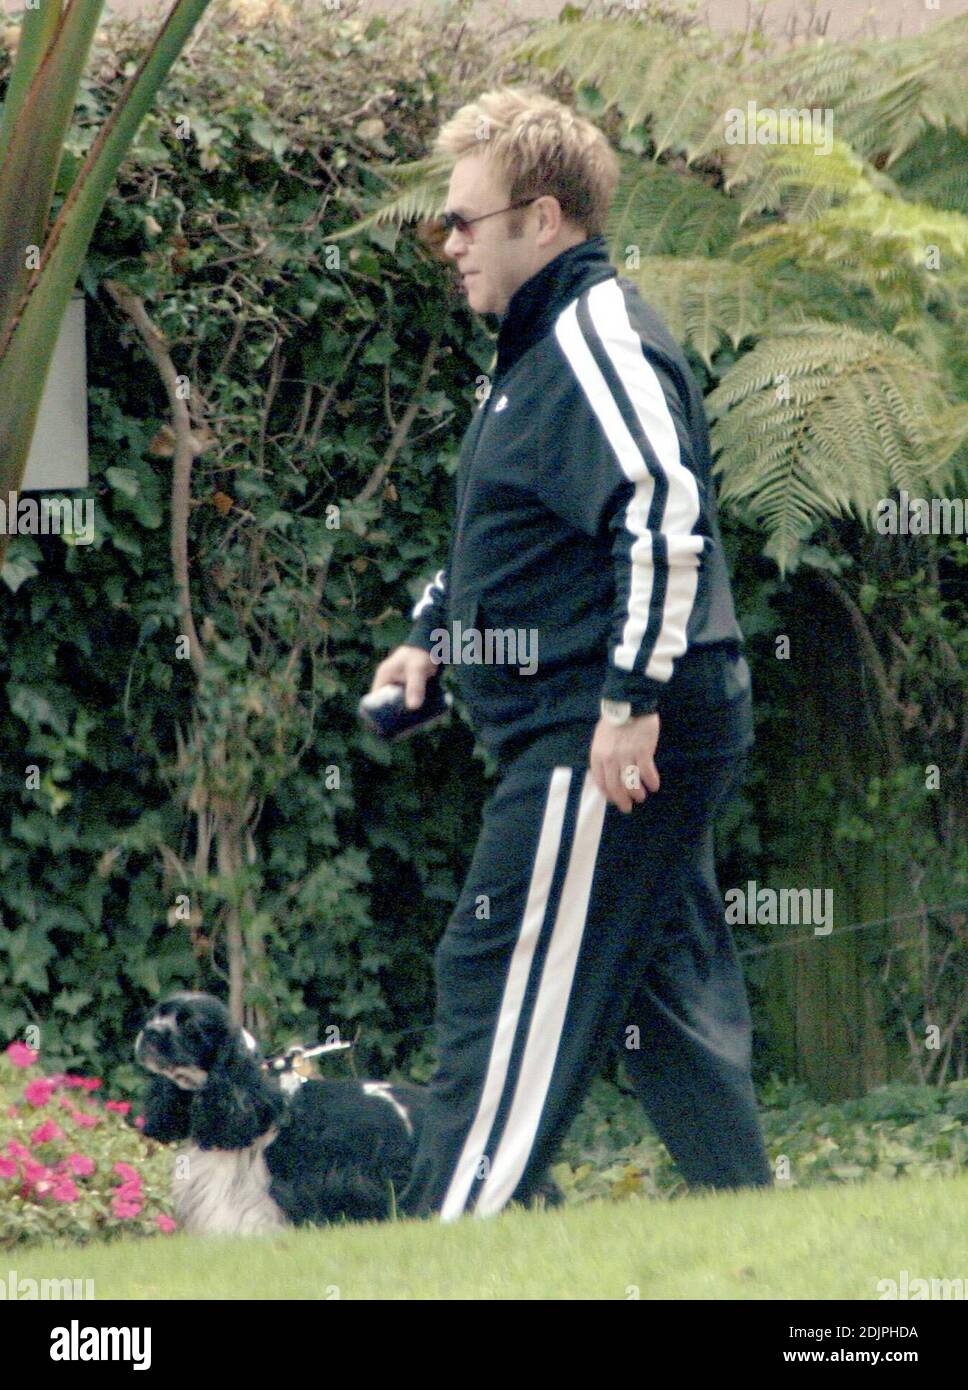 Esclusiva!! Elton John lascia il Beverly Hills Hotel a cinque stelle con un entourage e il suo amato cane. Il cantante stout ha portato un vestito da jogging, ma non è stato visto esercitarsi. 9/22/06 Foto Stock